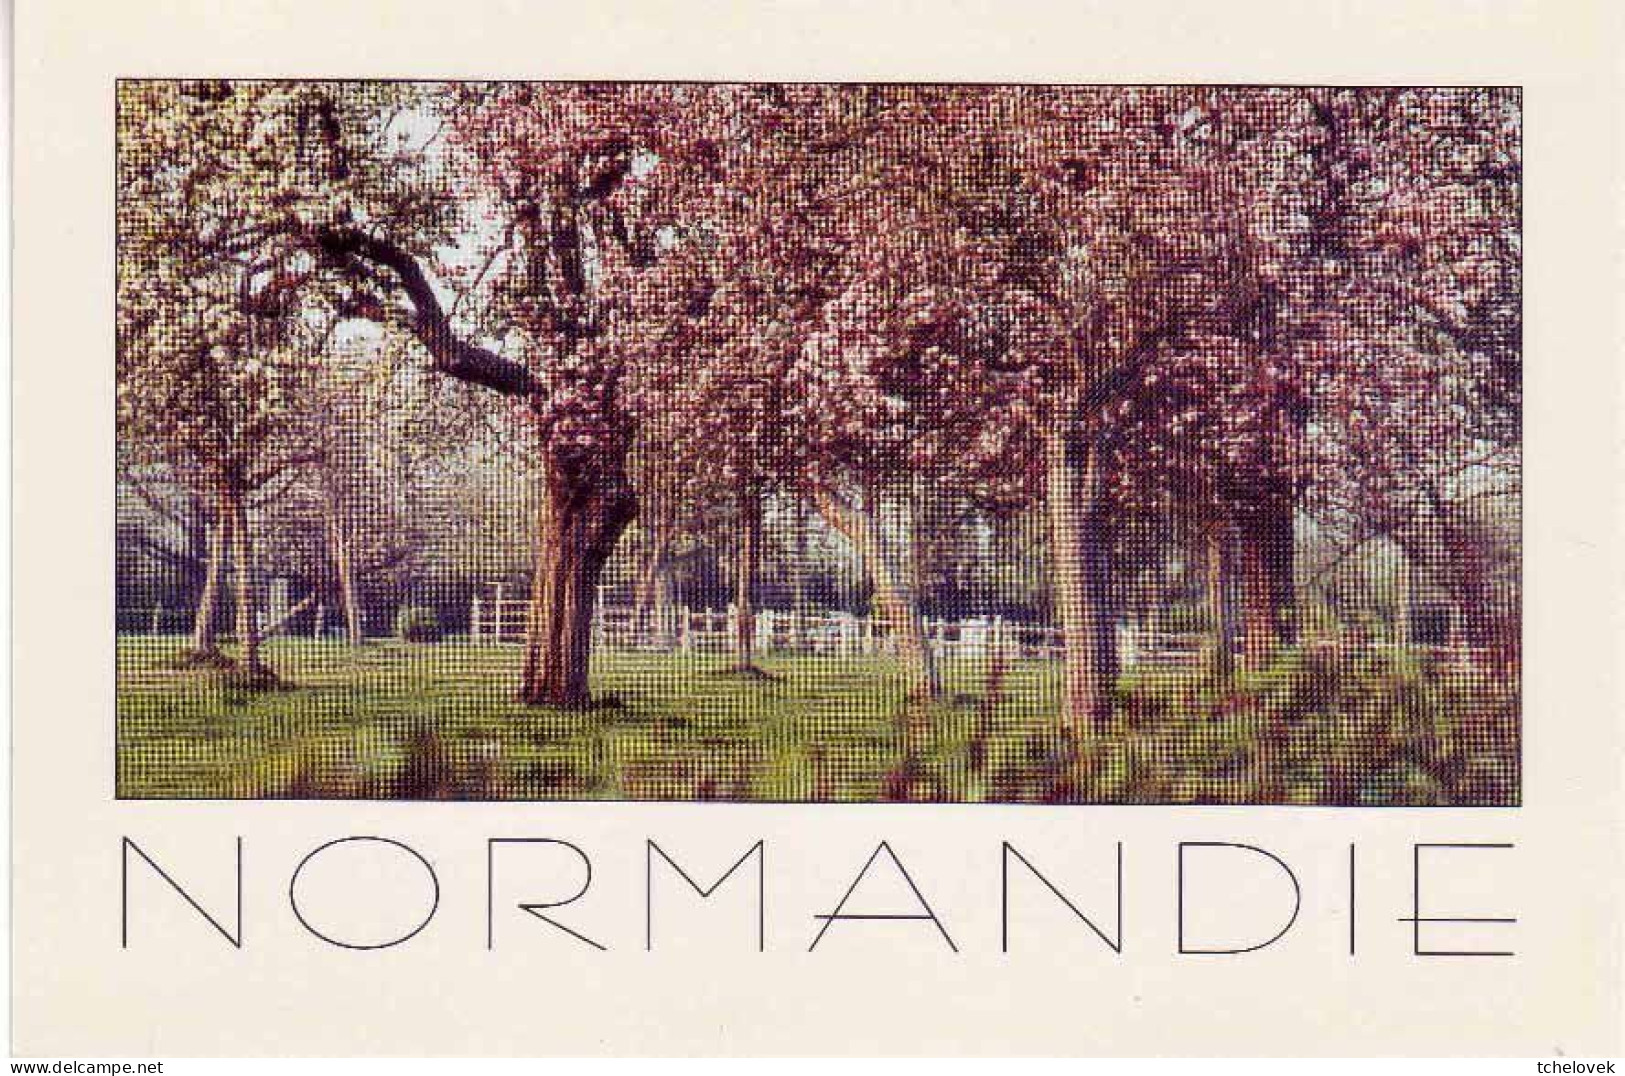 0 Regions. Normandie. 76.000.156 Ane Lait Chaumières & SC4 chaumière & a la ferme & pommiers & (1) & (2)